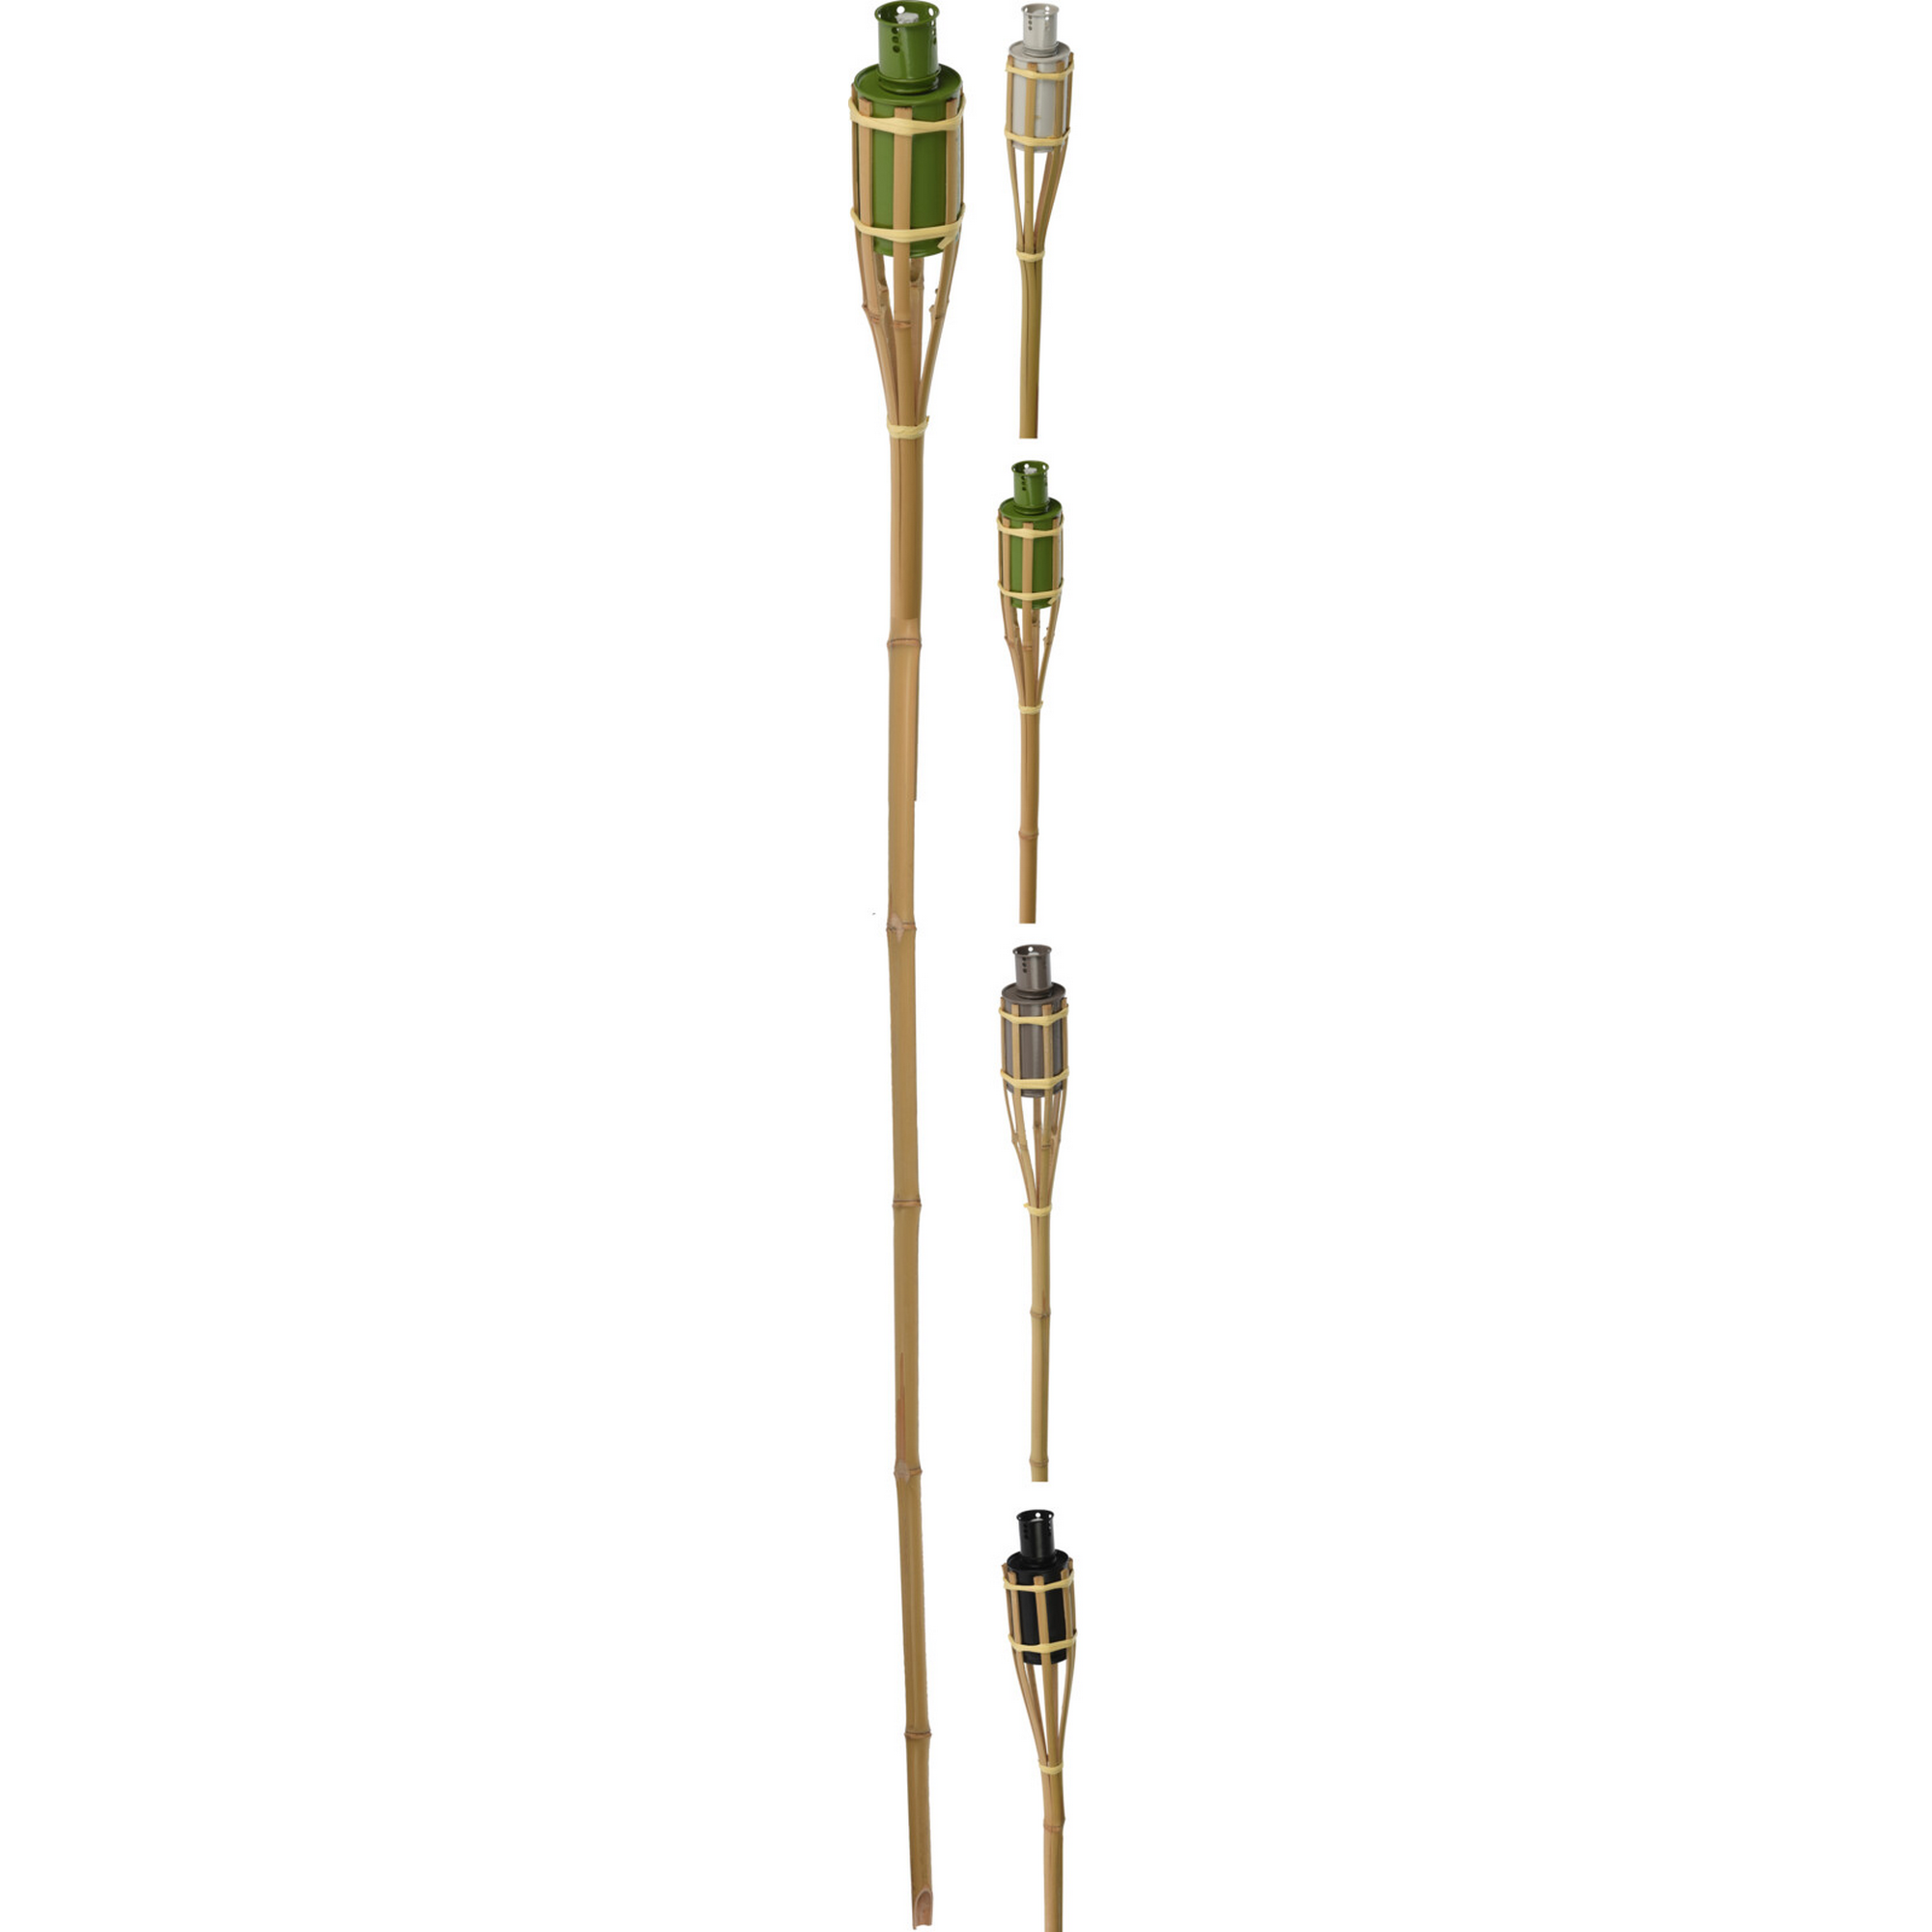 Gartenfackel Bambus 120 cm mit 4 verschieden farbigen Ölbehältern + product picture